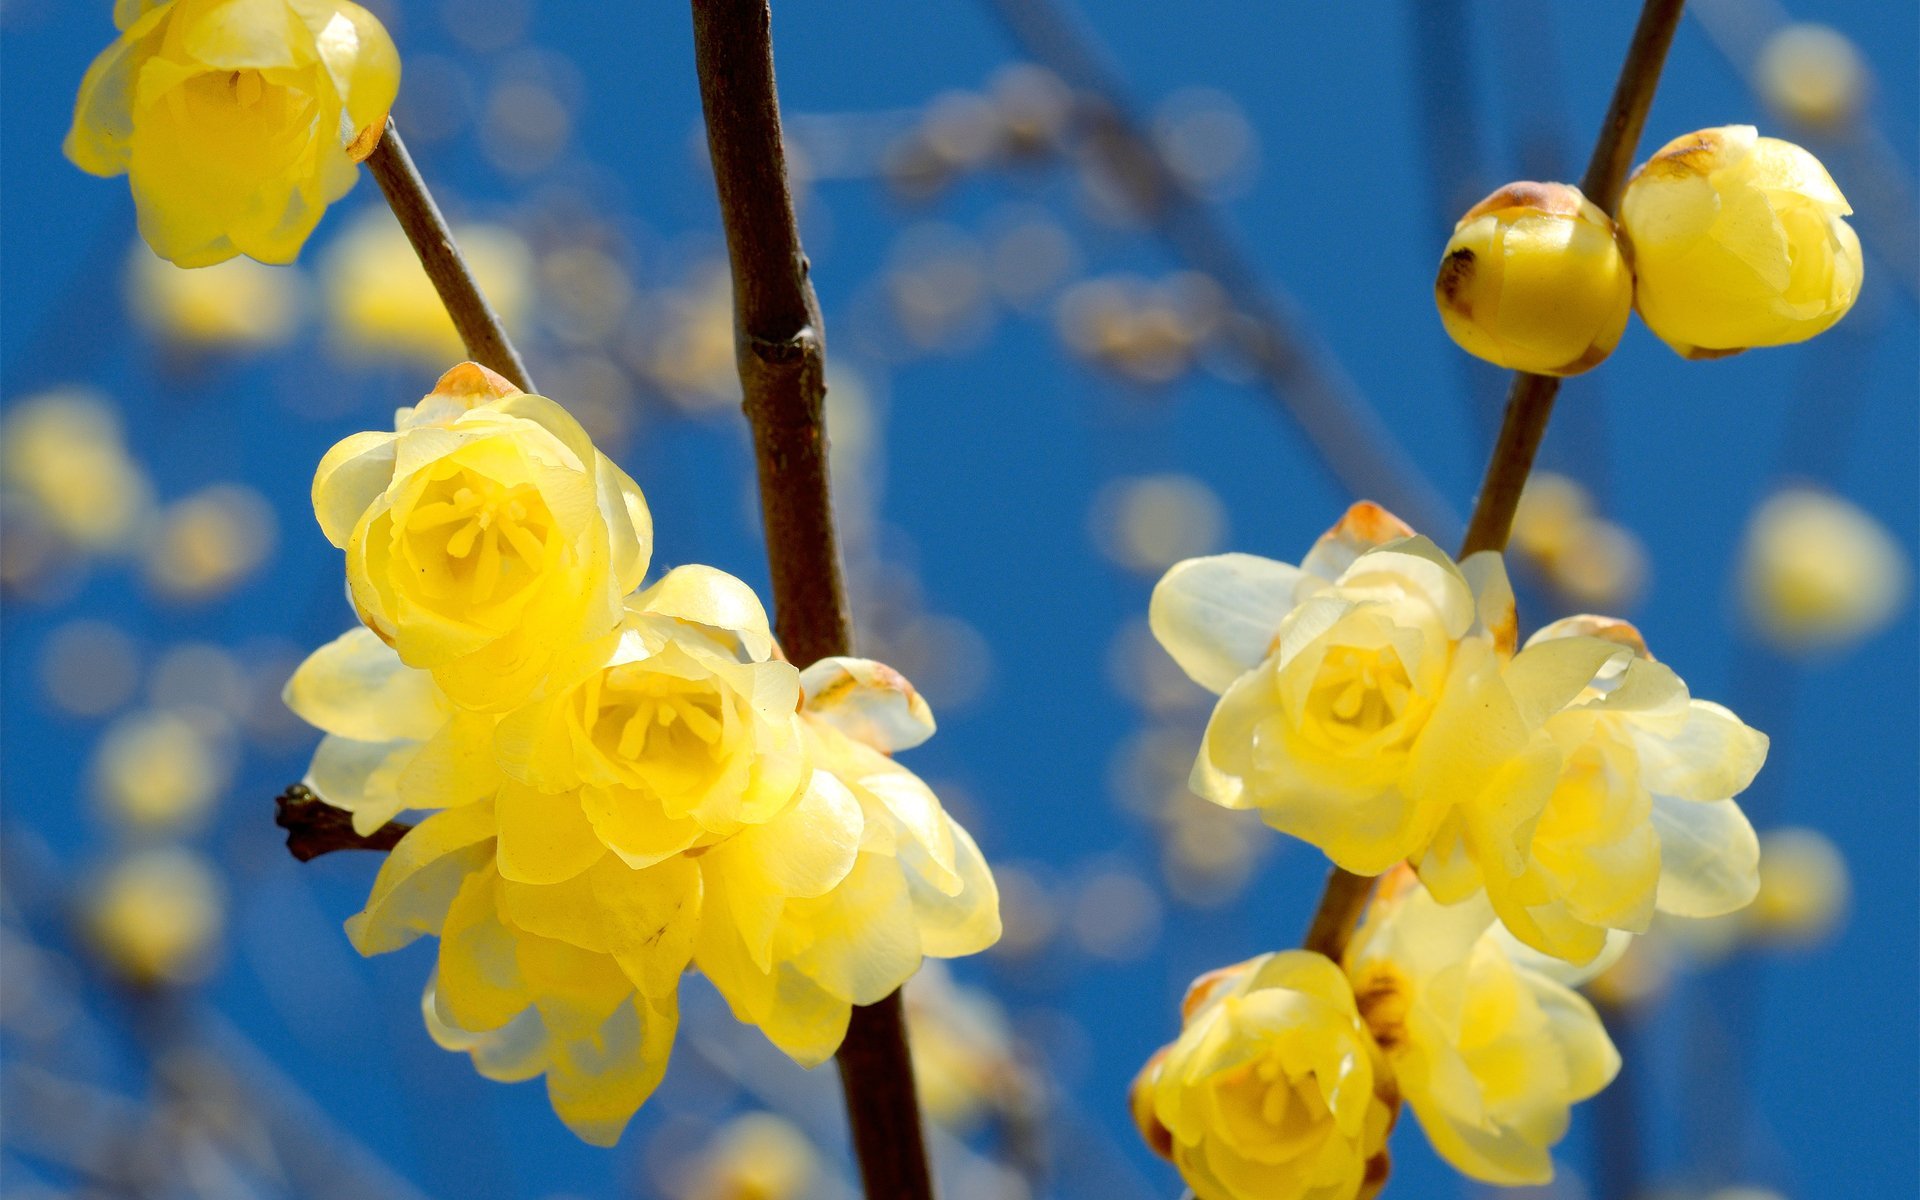 Обои апрель на рабочий стол красивые. Желтый цветок весенний апрельский. Желтые цветочки распускаются весной. Красивые весенние цветы.